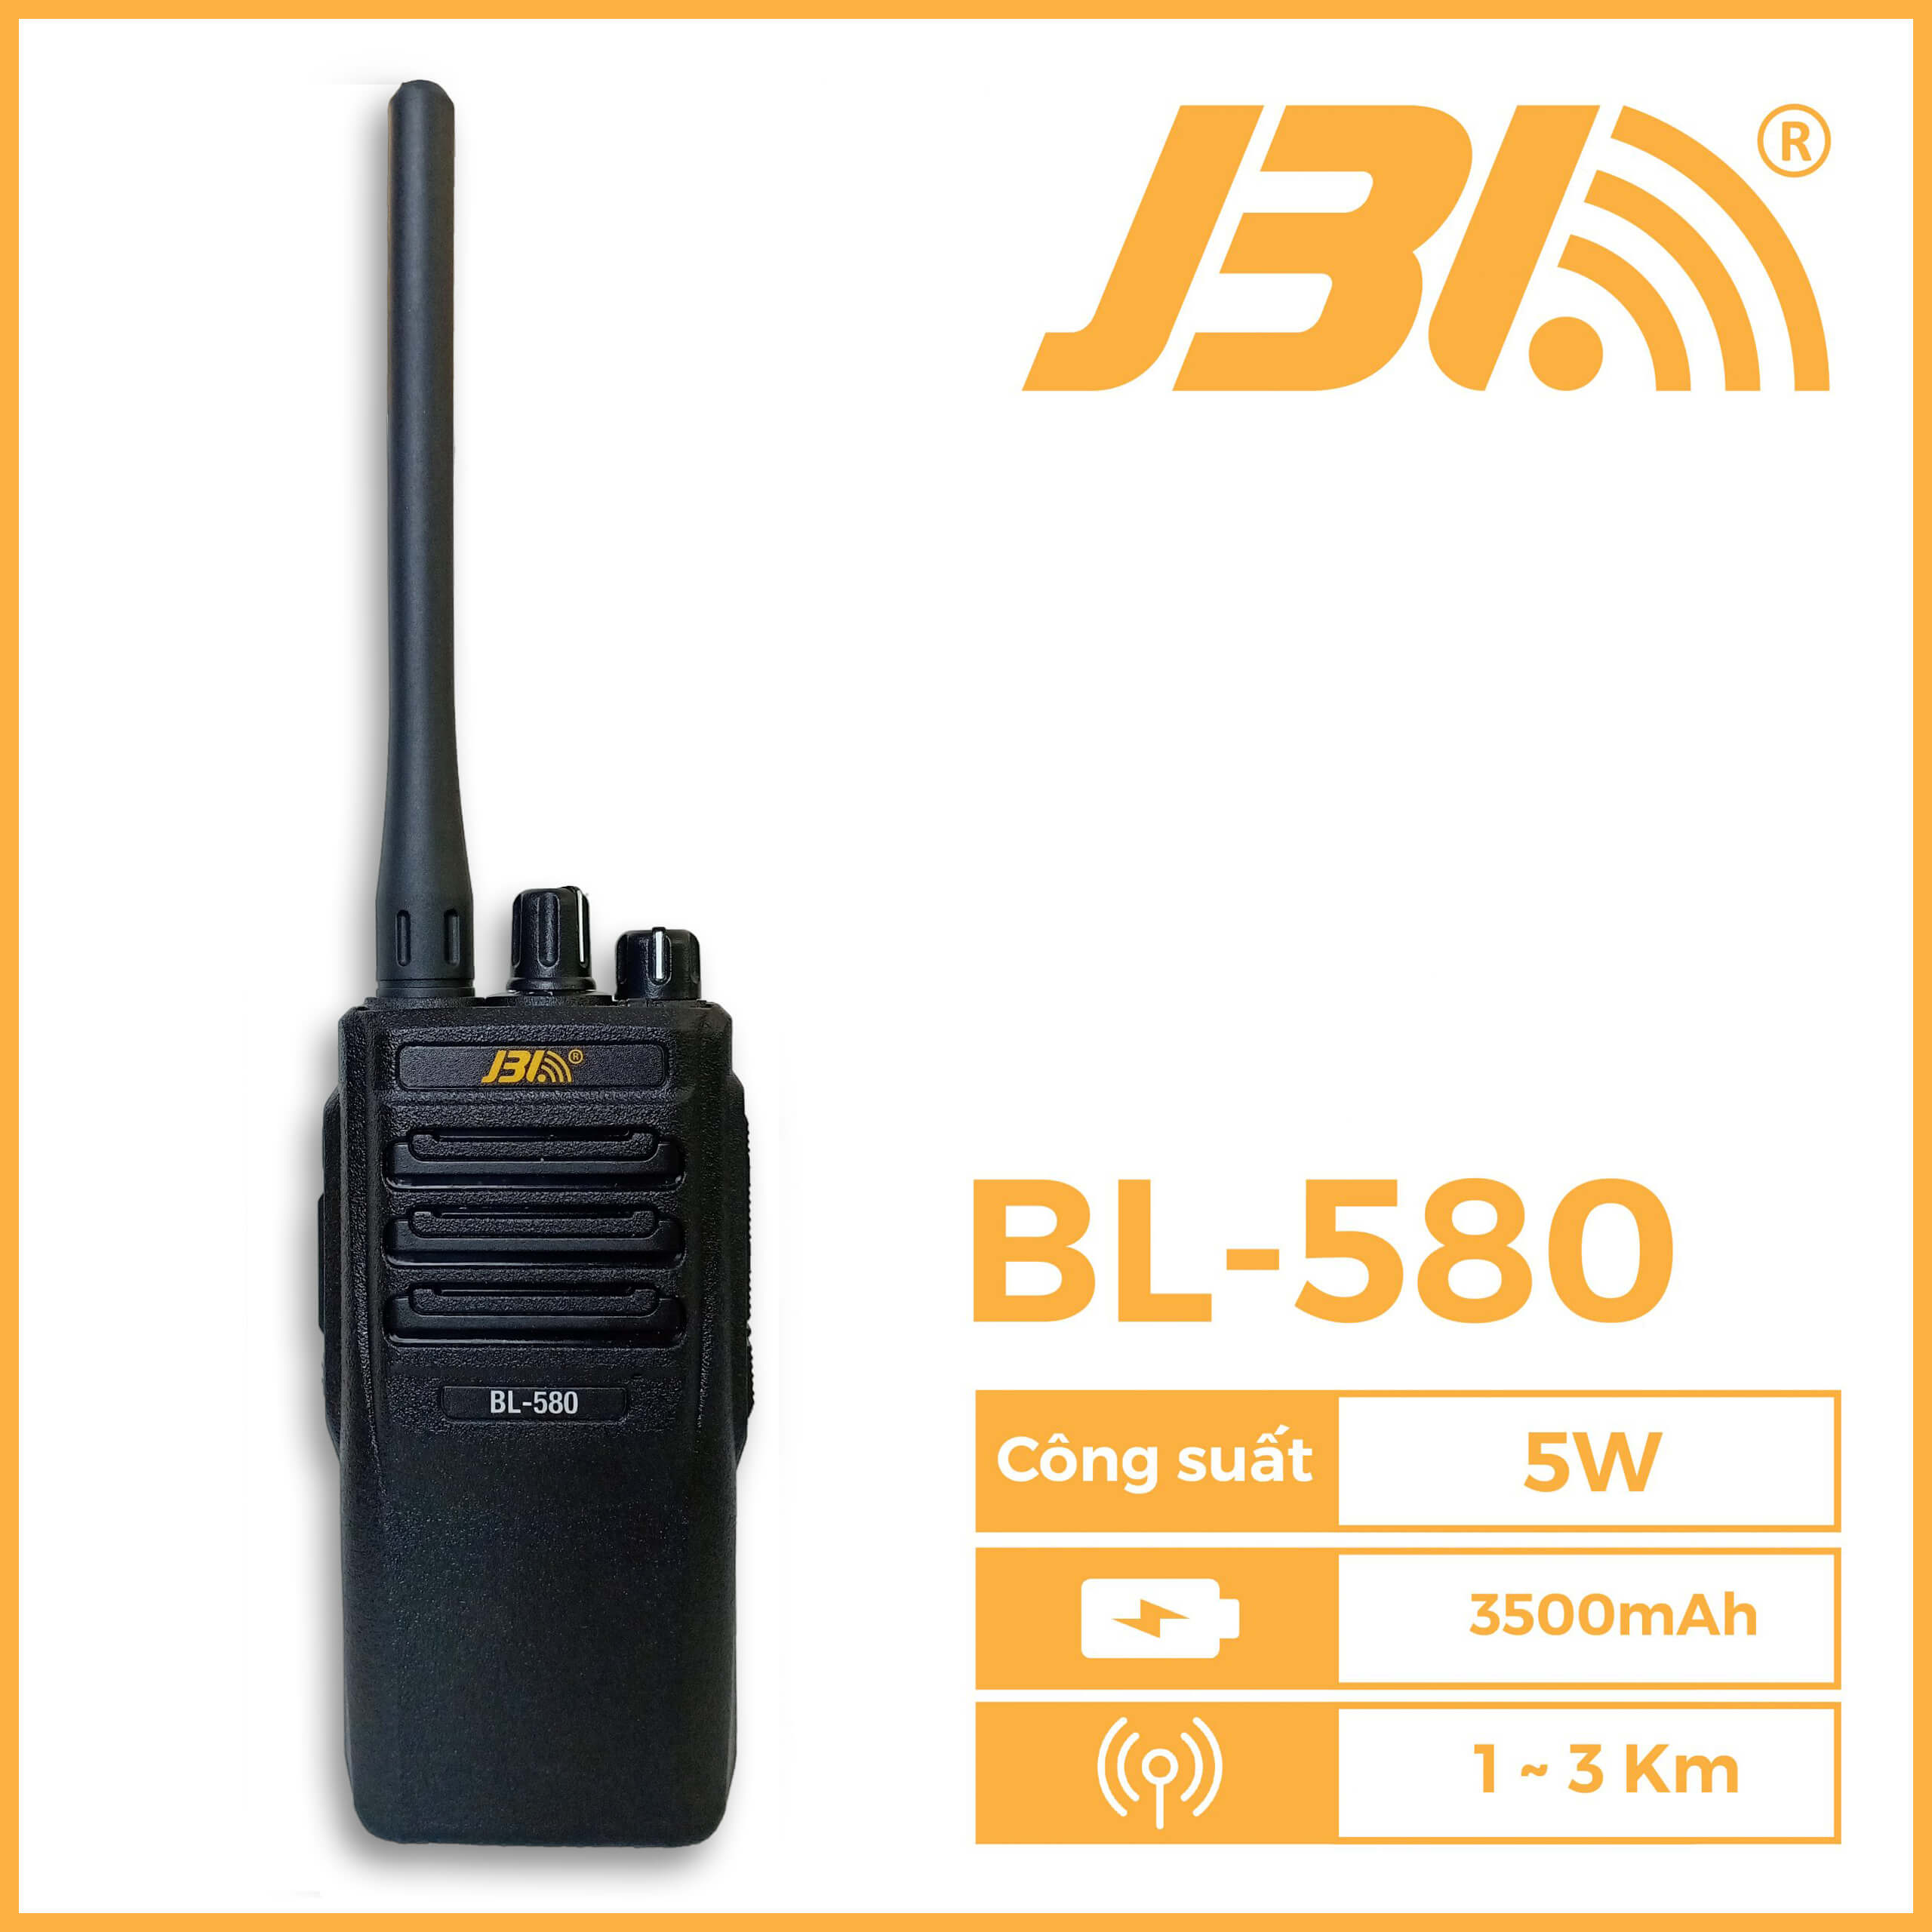 Bộ đàm cầm tay JBL BL-580 - Khoảng cách 3km - Pin 3500mAh - Công suất 5W